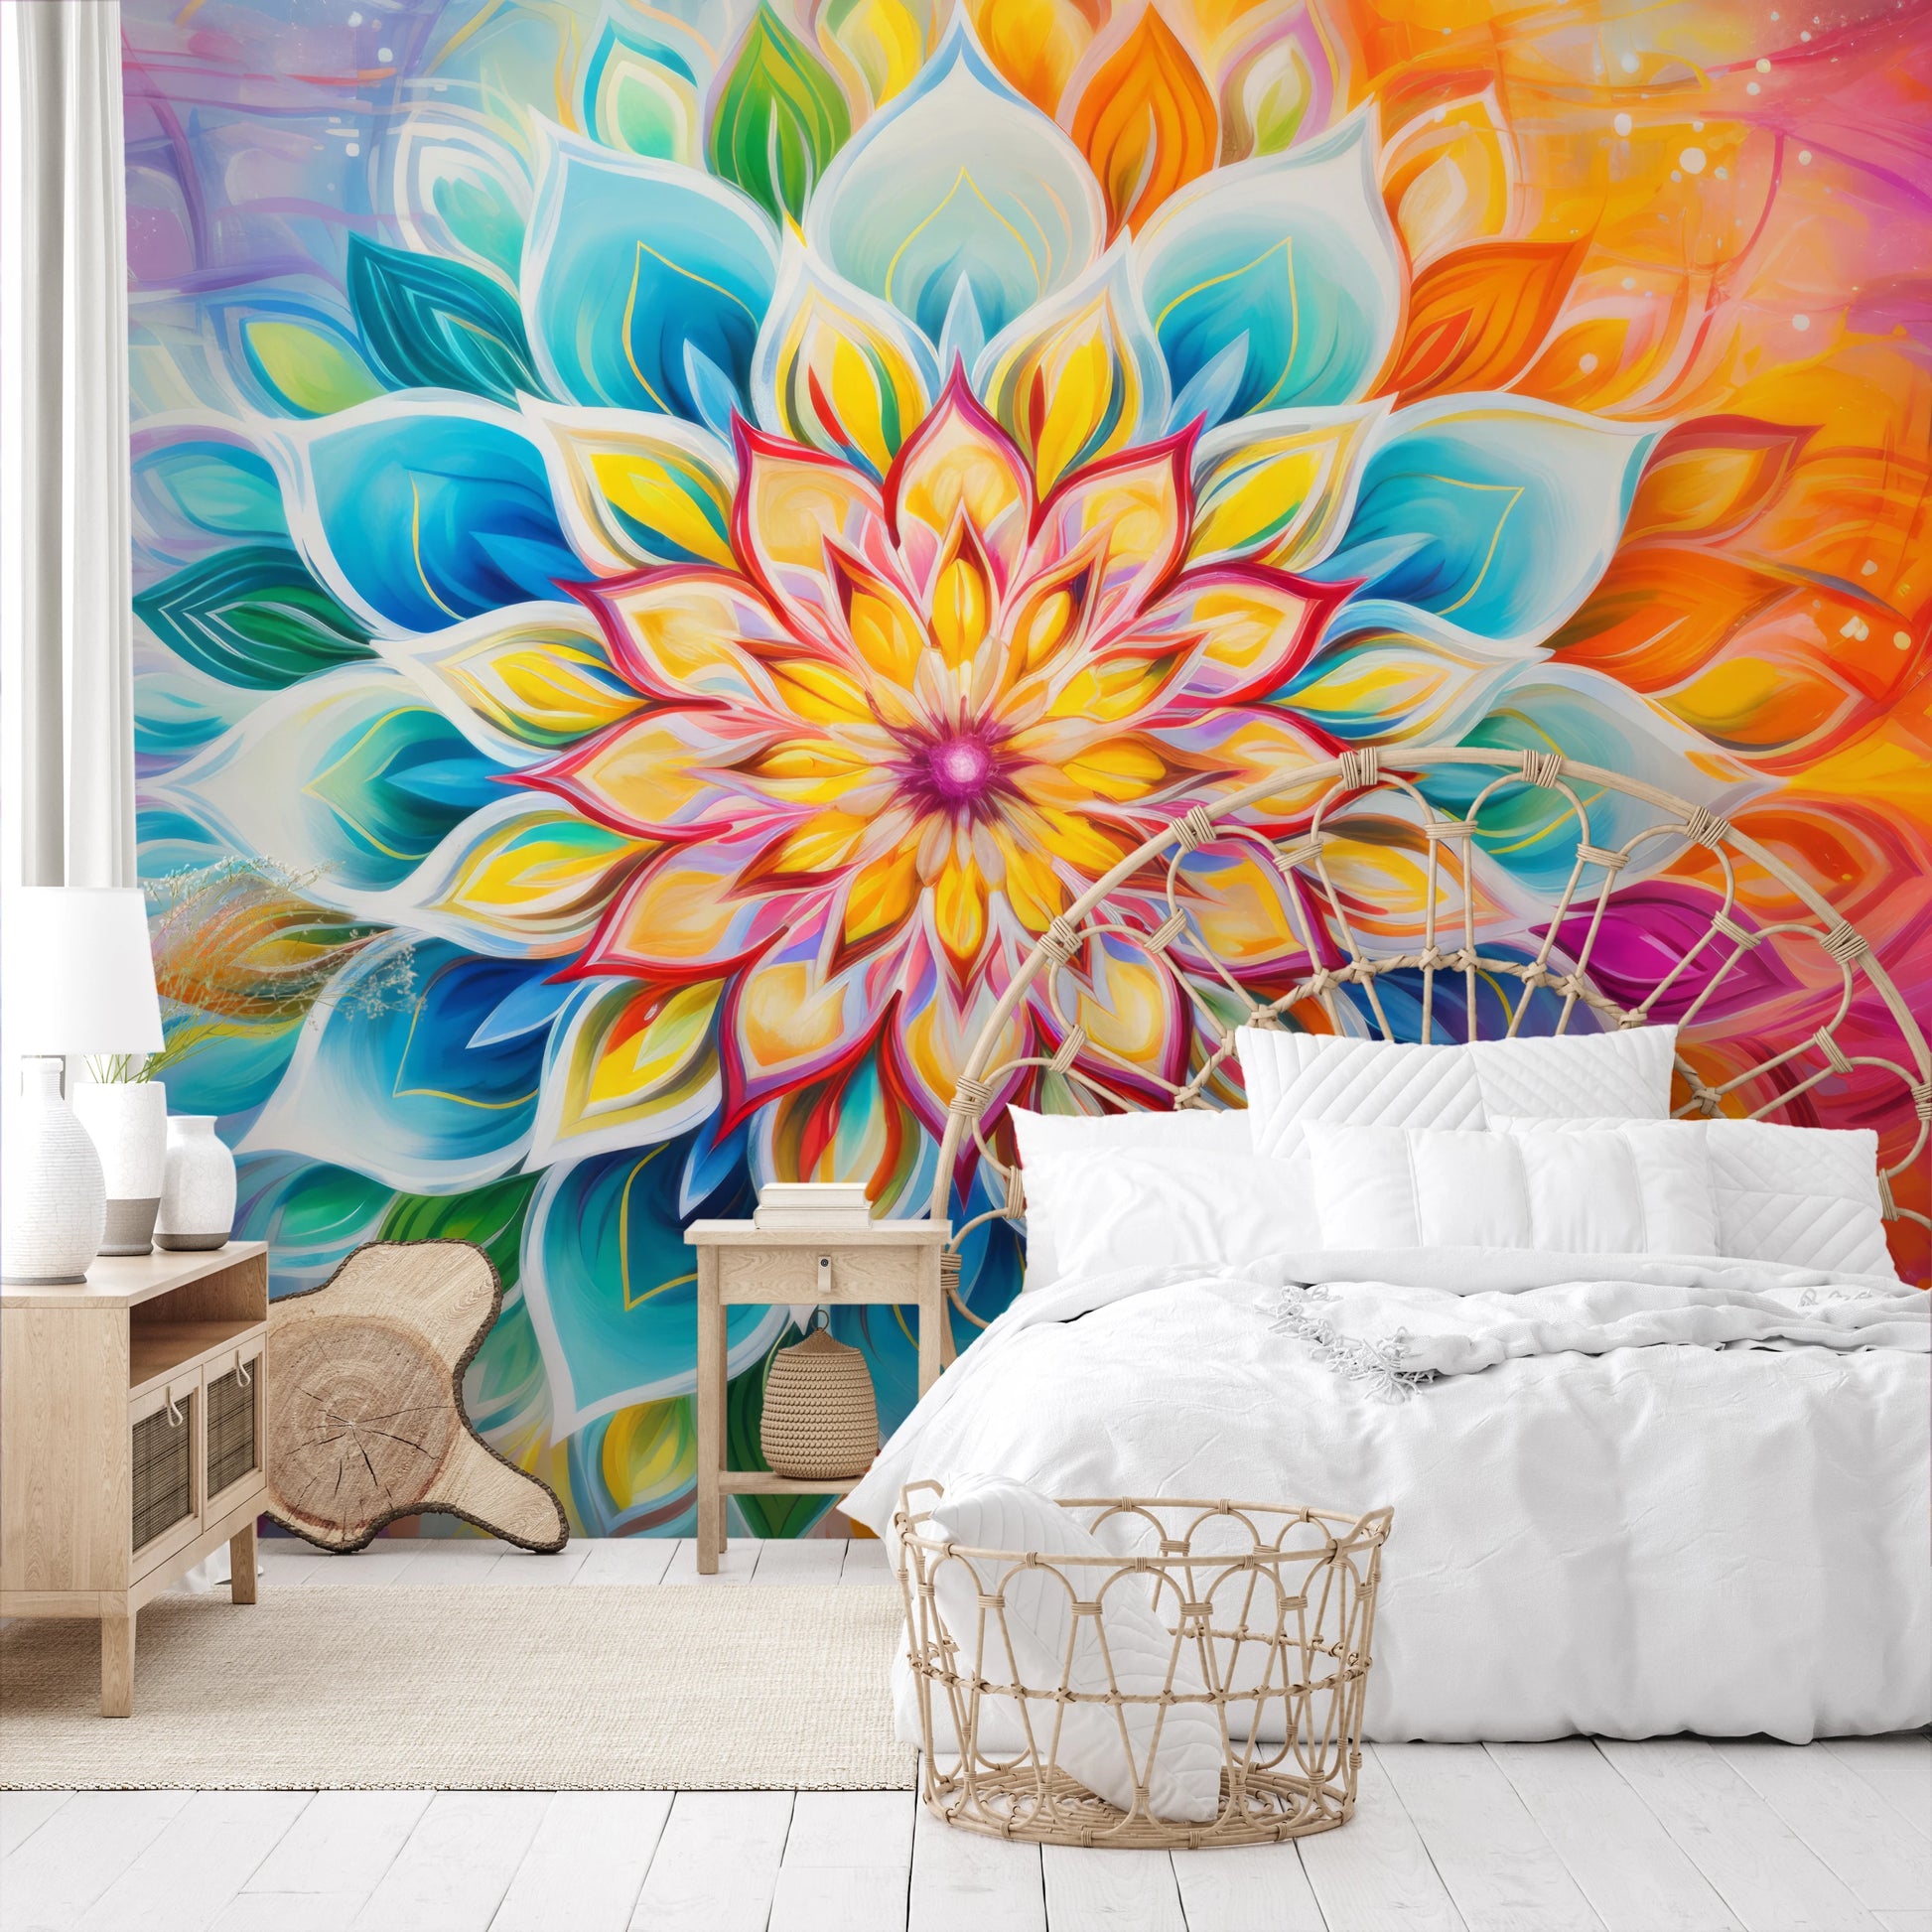 Wzór fototapety artystycznej o nazwie Vibrant Lotus pokazanej w aranżacji wnętrza.